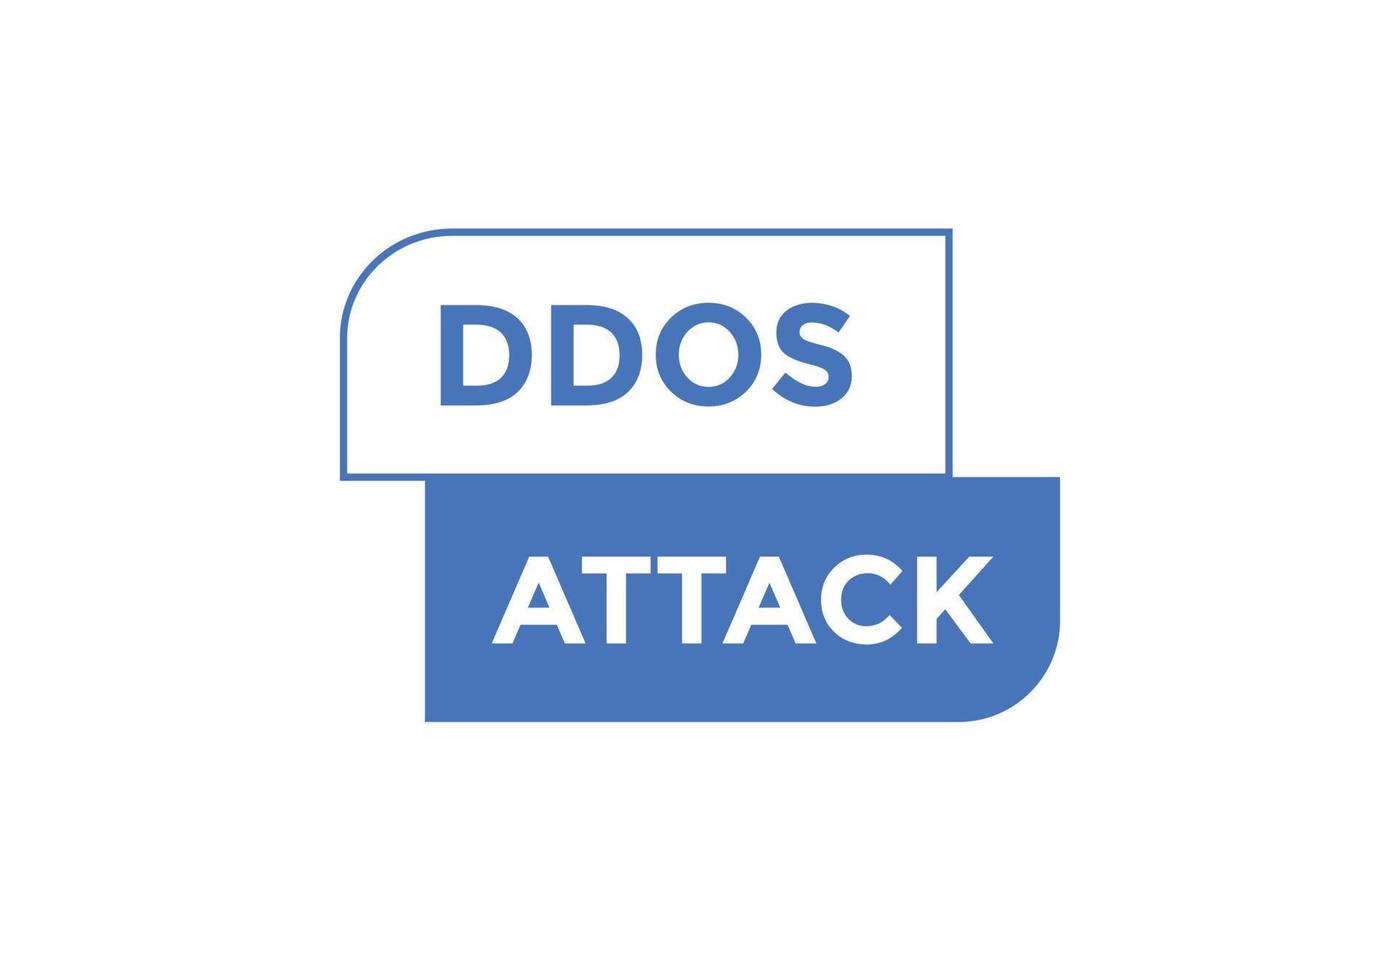 Ddos-Angriffstextschaltfläche. ddos greifen sprechblase an. Ddos-Angriffstext-Webschablonen-Vektorillustration. vektor